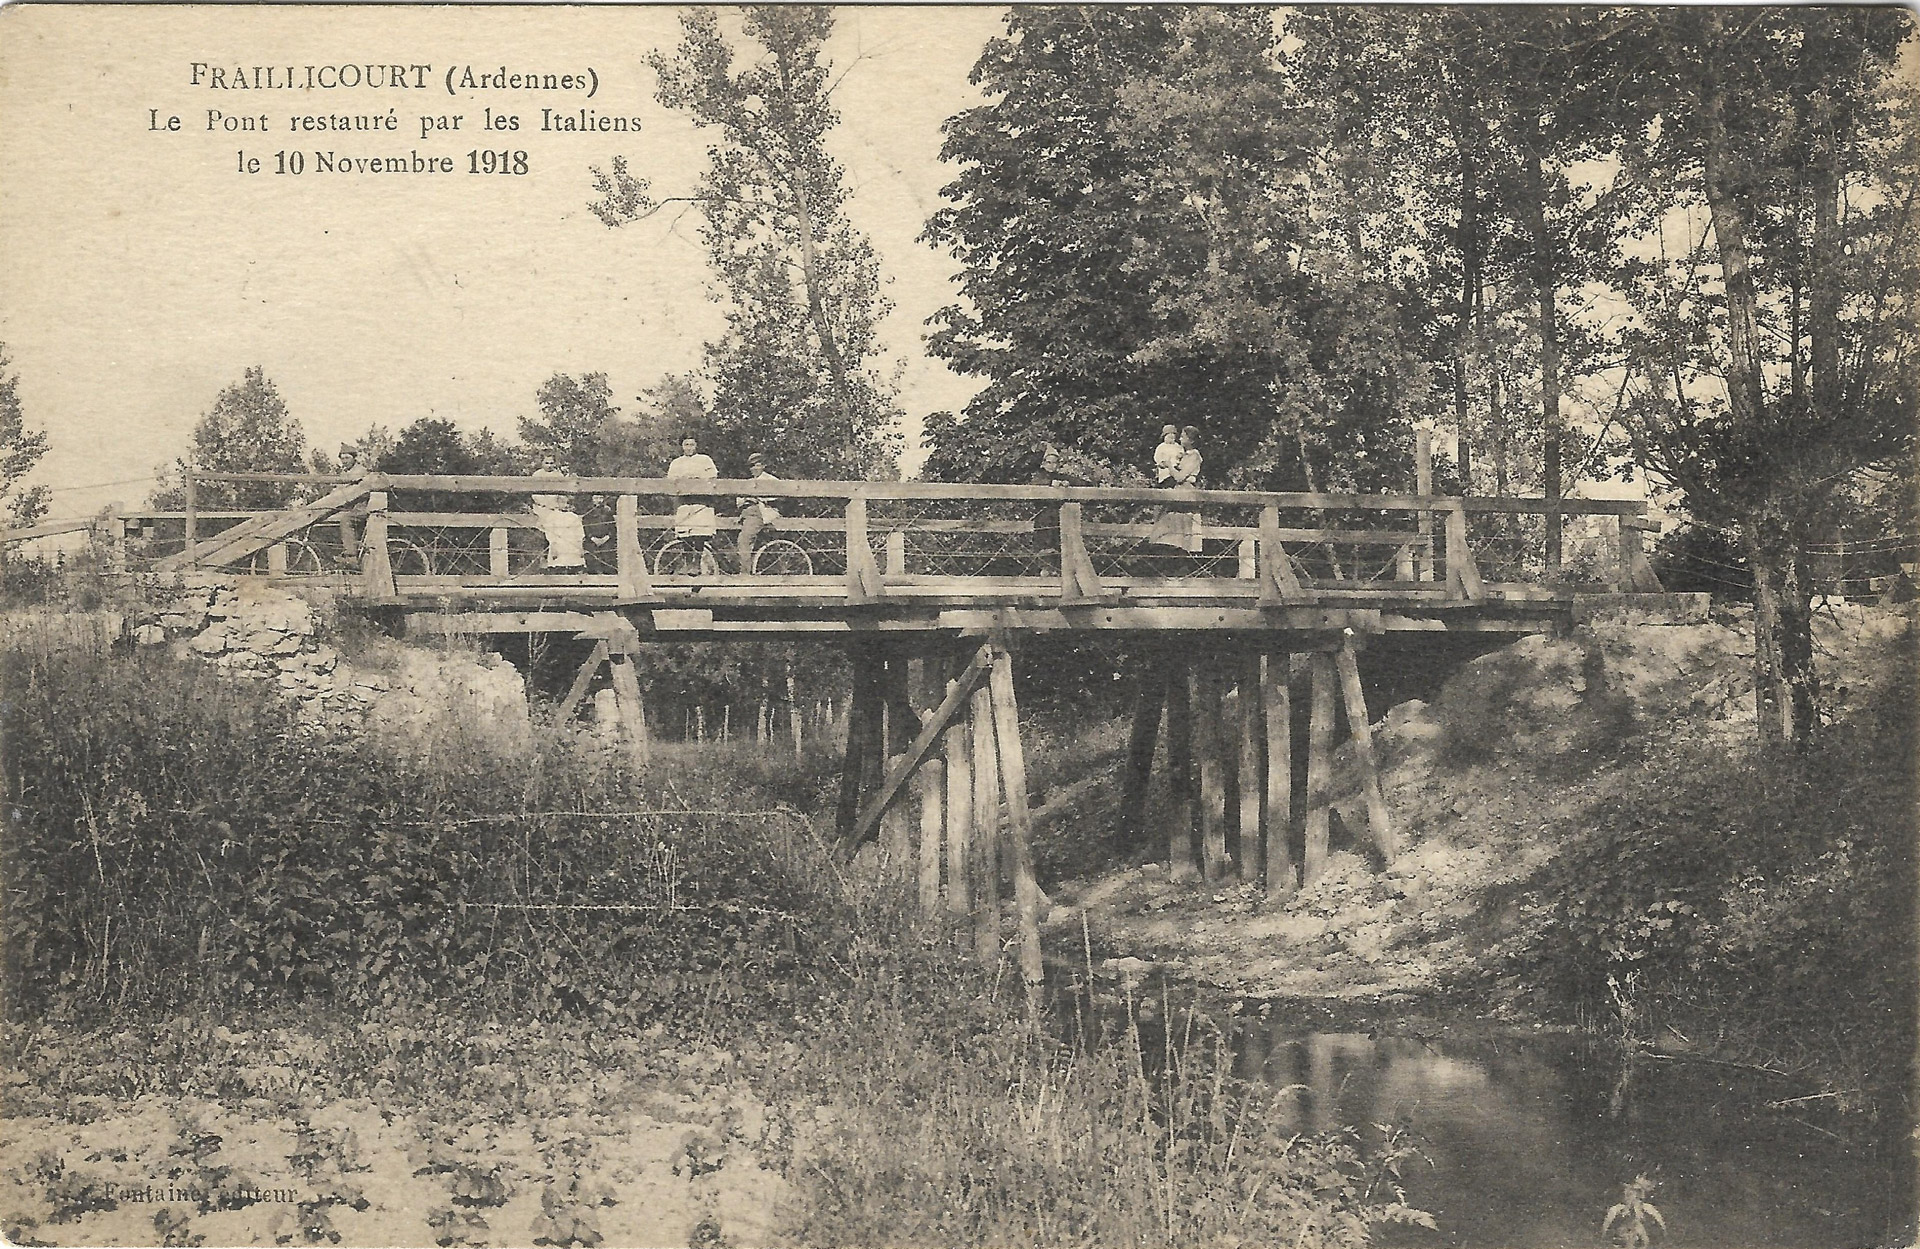 Fraillicourt, le pont reconstruit par les hommes du 2e corps d’armée italien en novembre 1918 │ Carte postale, circulée le 11.9.1924 │ col. pdgit1918